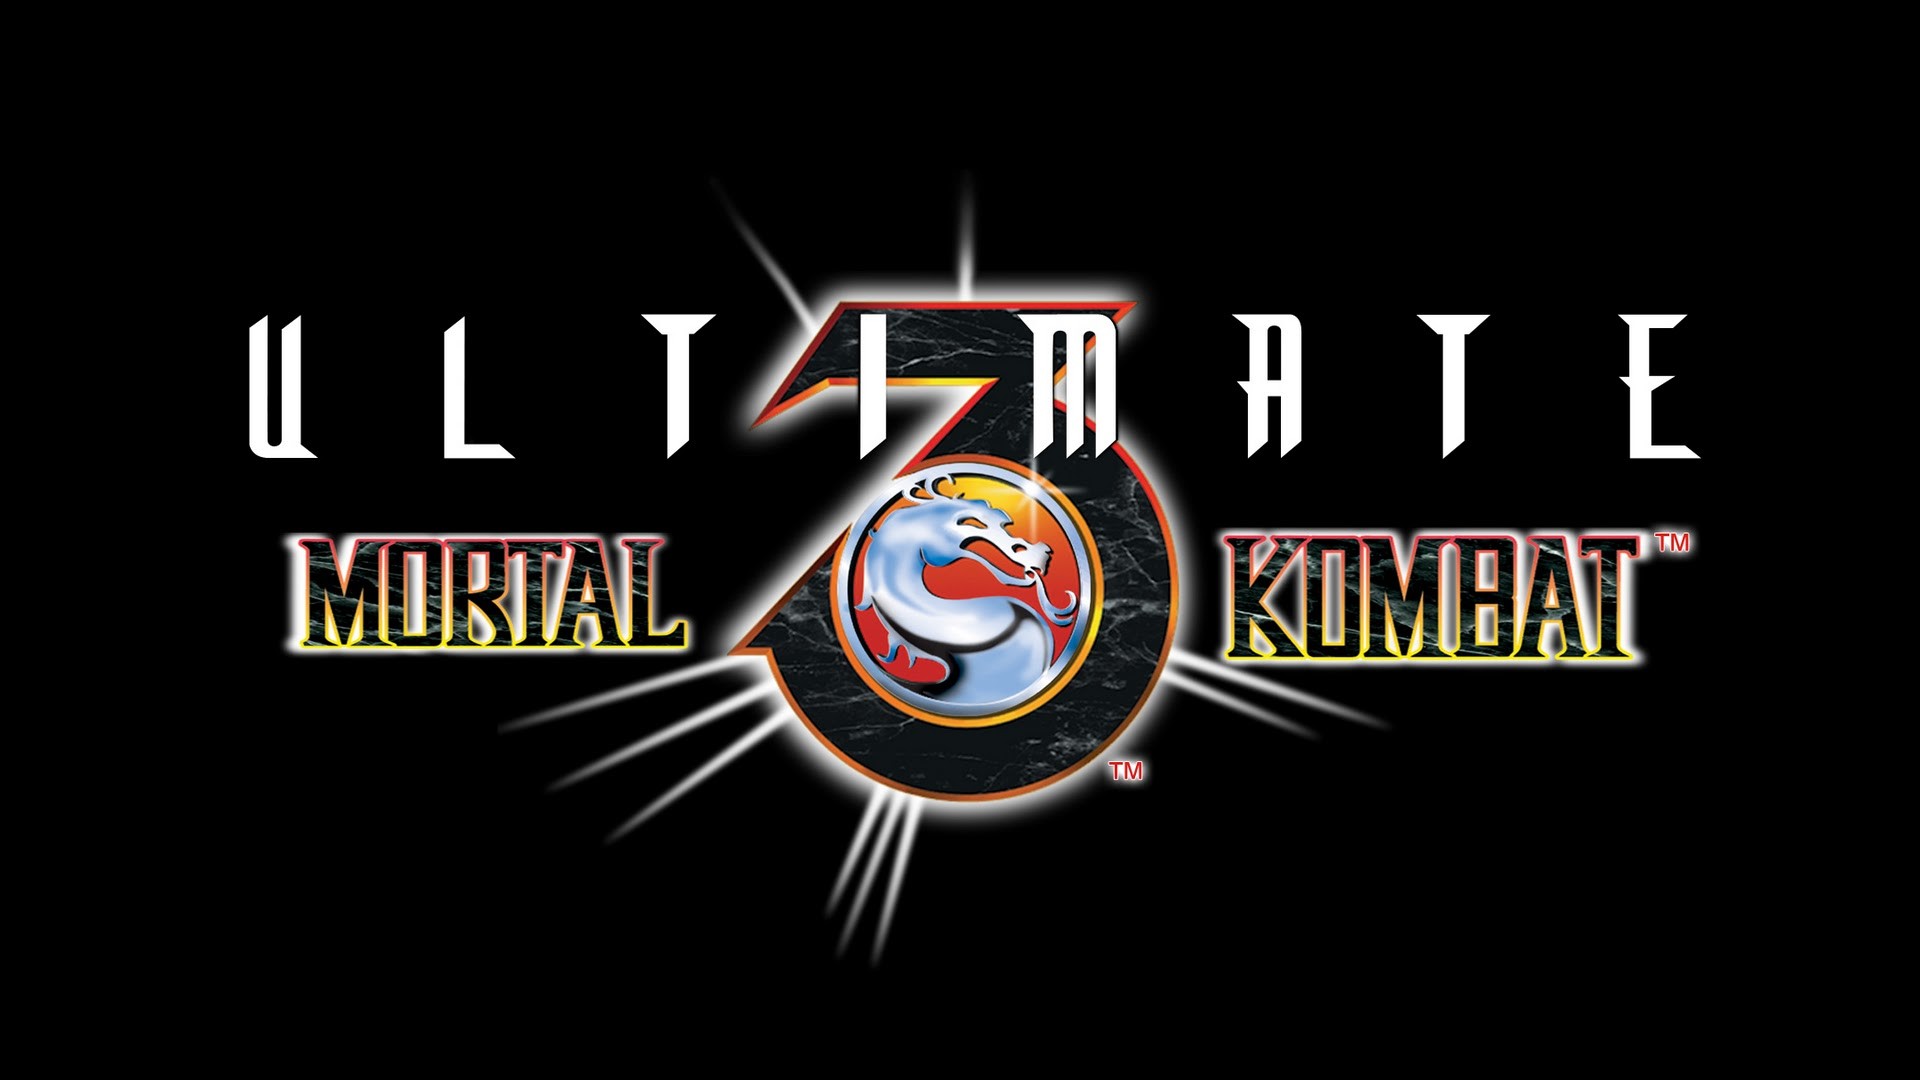 Descargar fondos de escritorio de Ultimate Mortal Kombat 3 HD